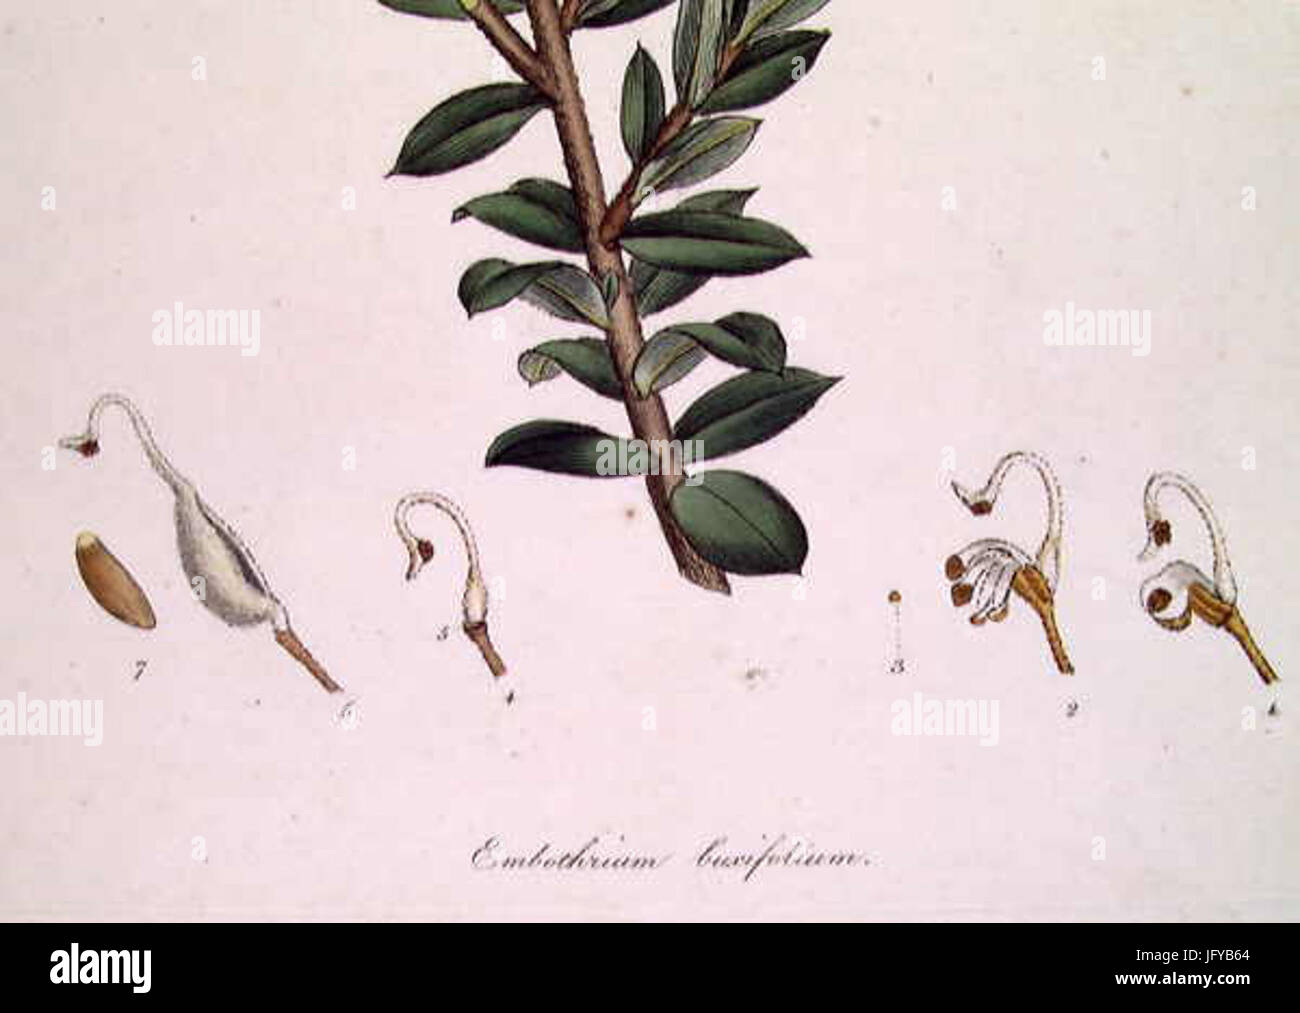 Embothrium 28Grevillea29 buxifolium-detail Stock Photo